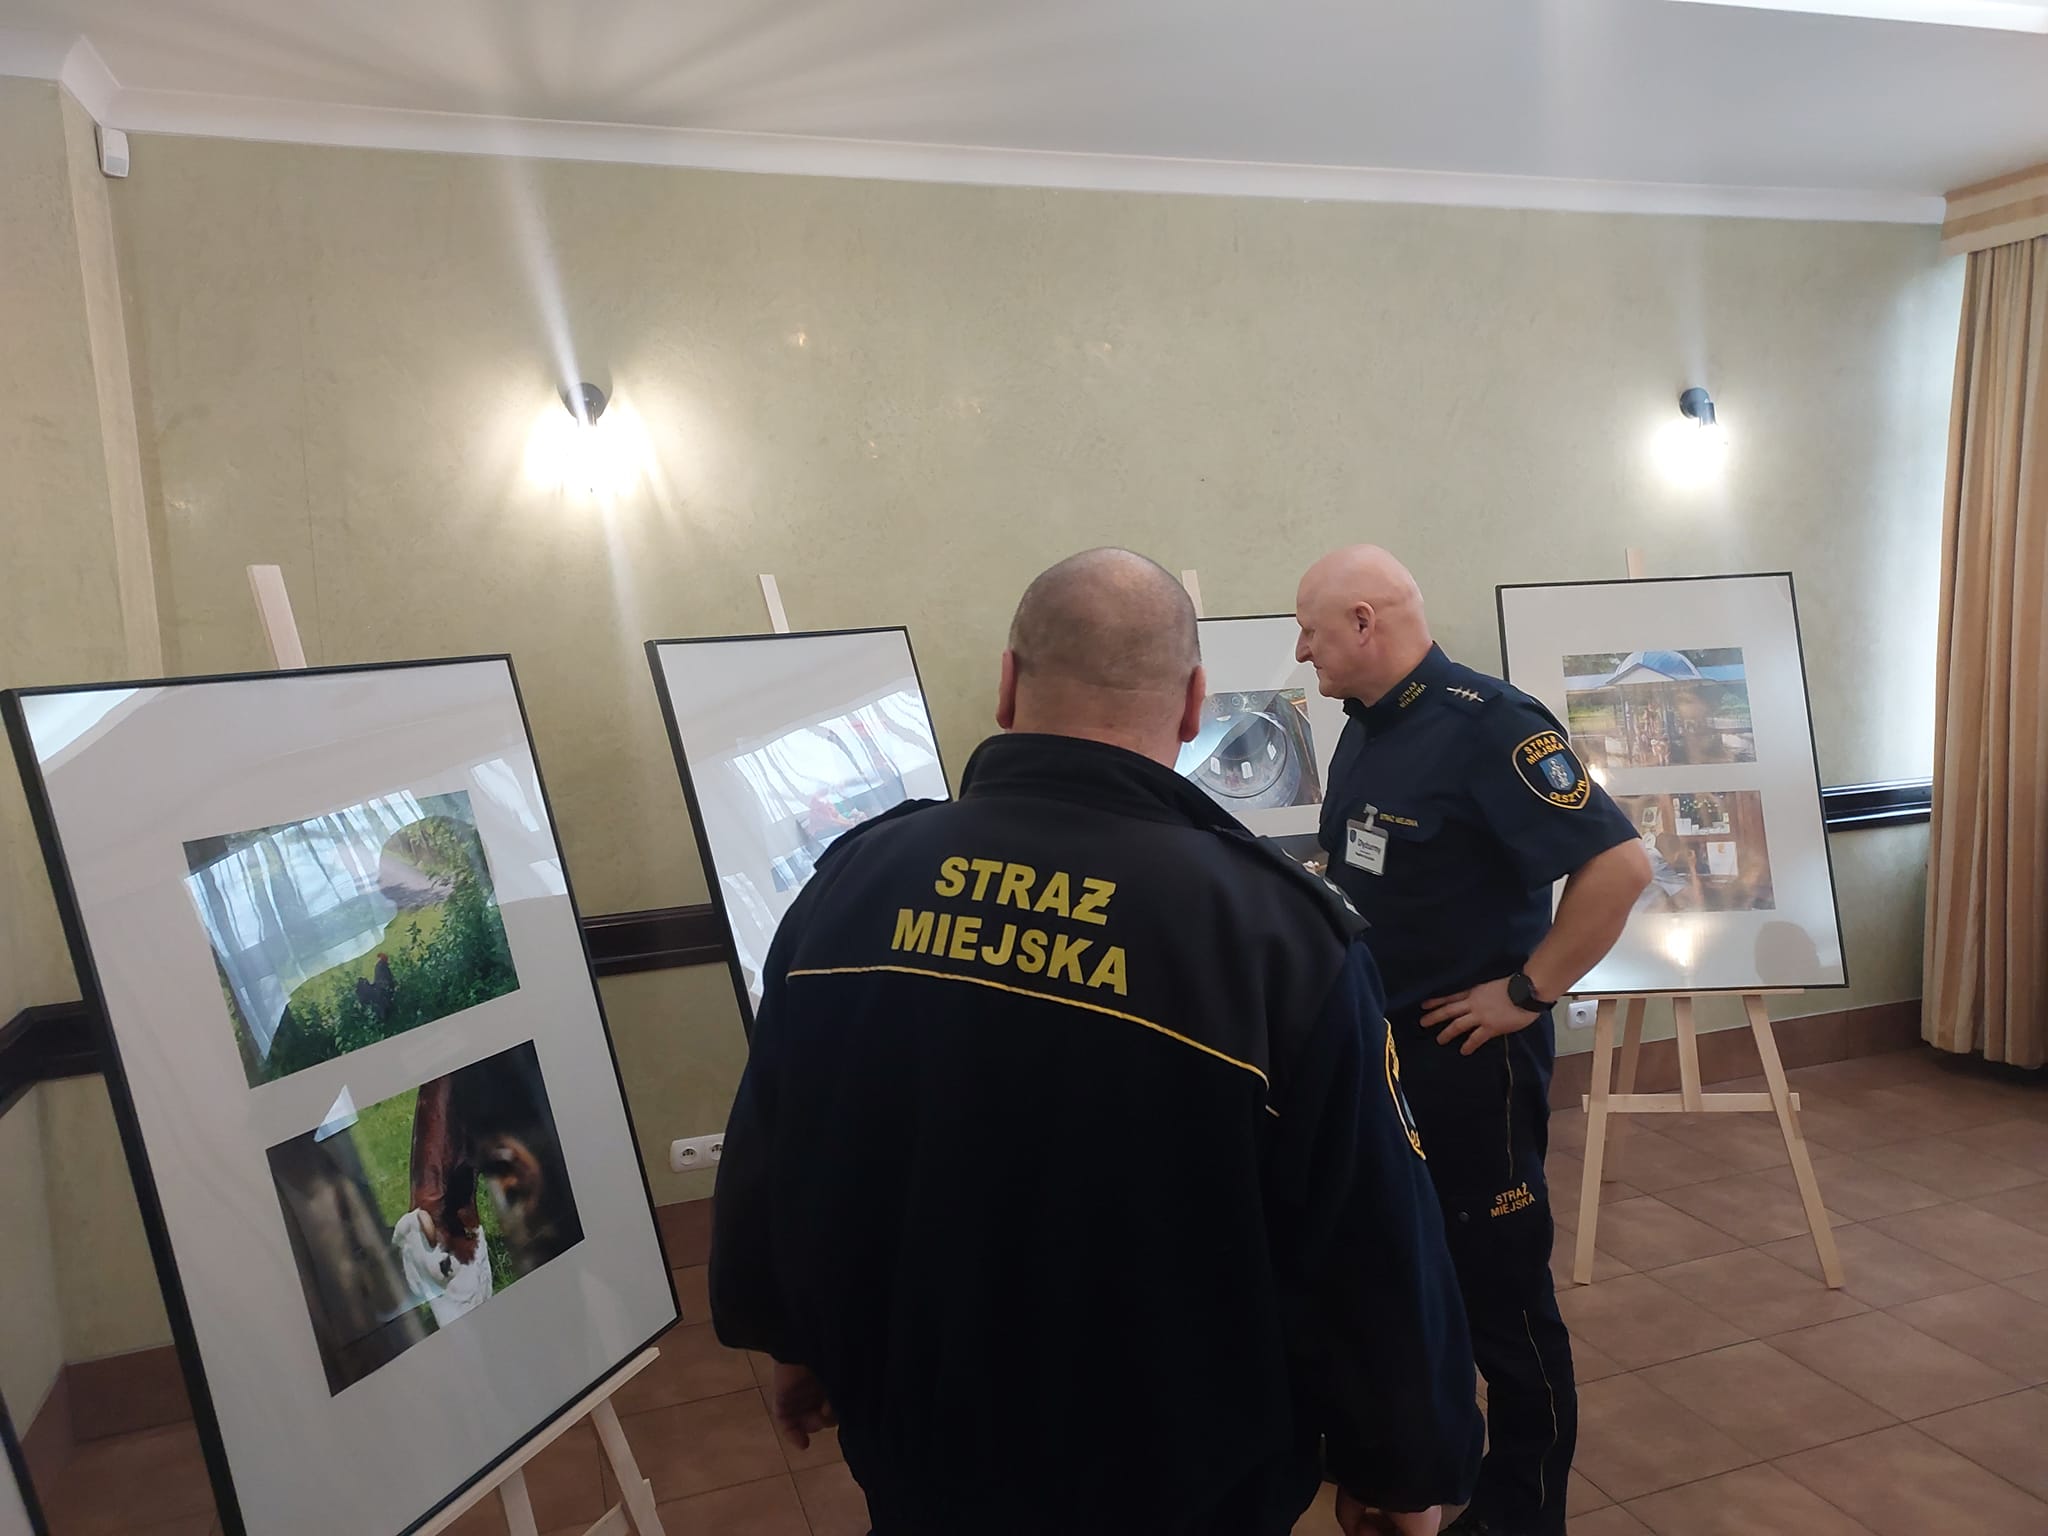 Фотографии из идиллической, красочной и мирной Украины 2019 года.